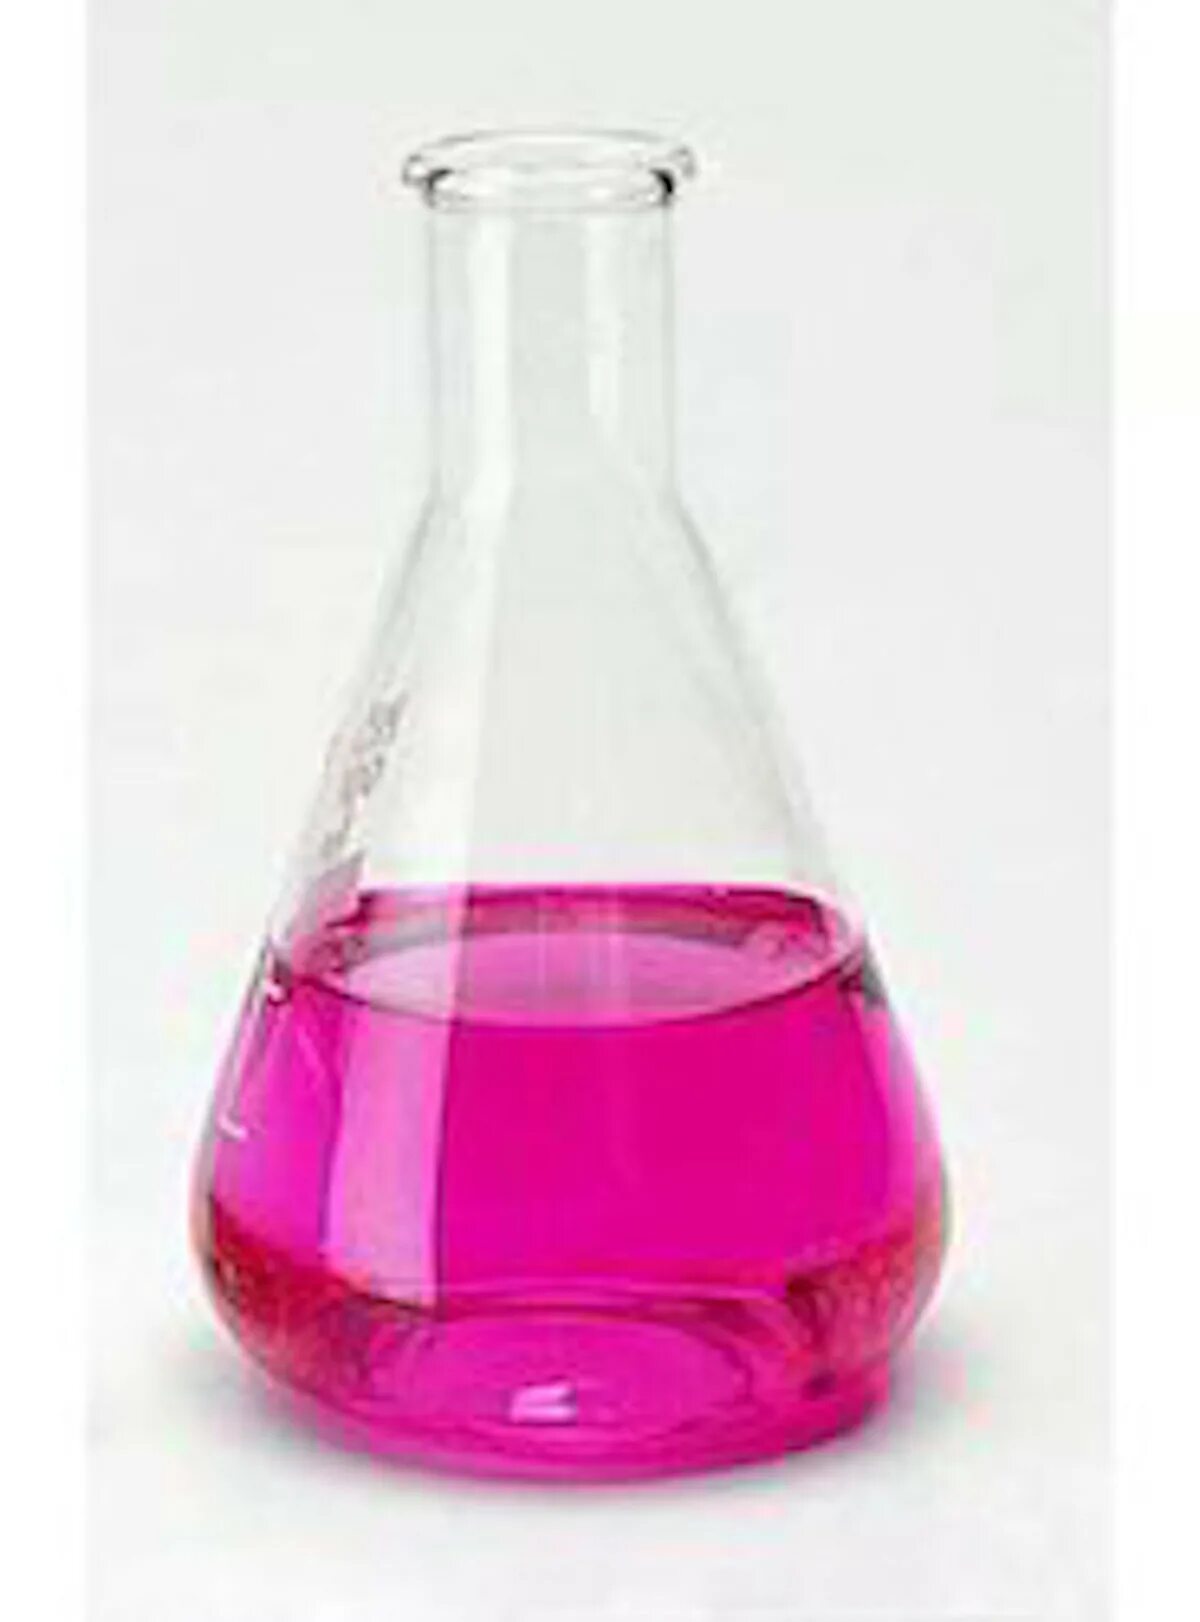 В склянке без этикетки находится бесцветный раствор. Фенолфталеин 0,1%. Фенол и фенолфталеин. Колба с раствором. Розовое окрашивание химия.